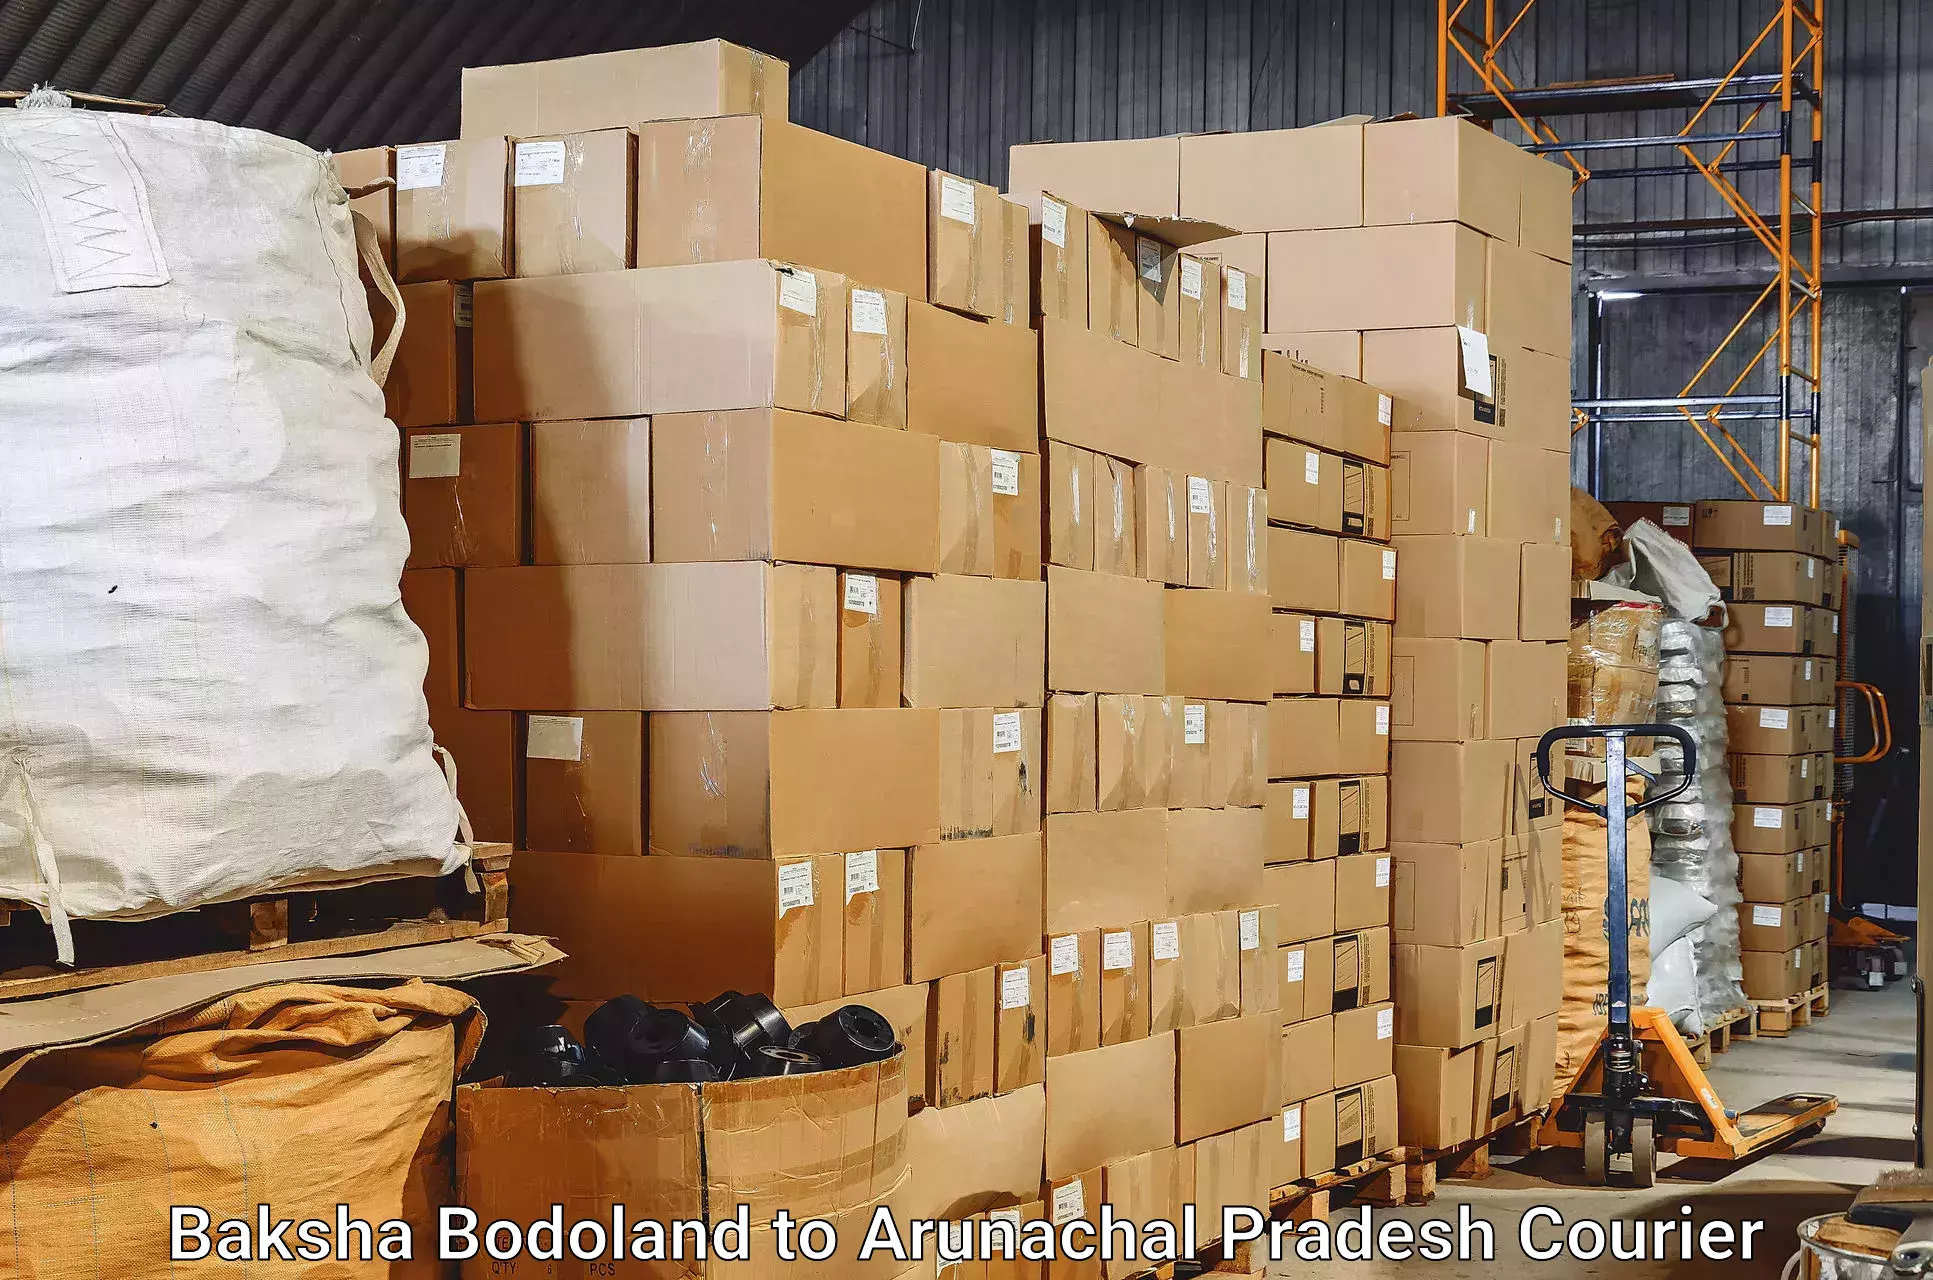 Hassle-free luggage shipping Baksha Bodoland to Deomali